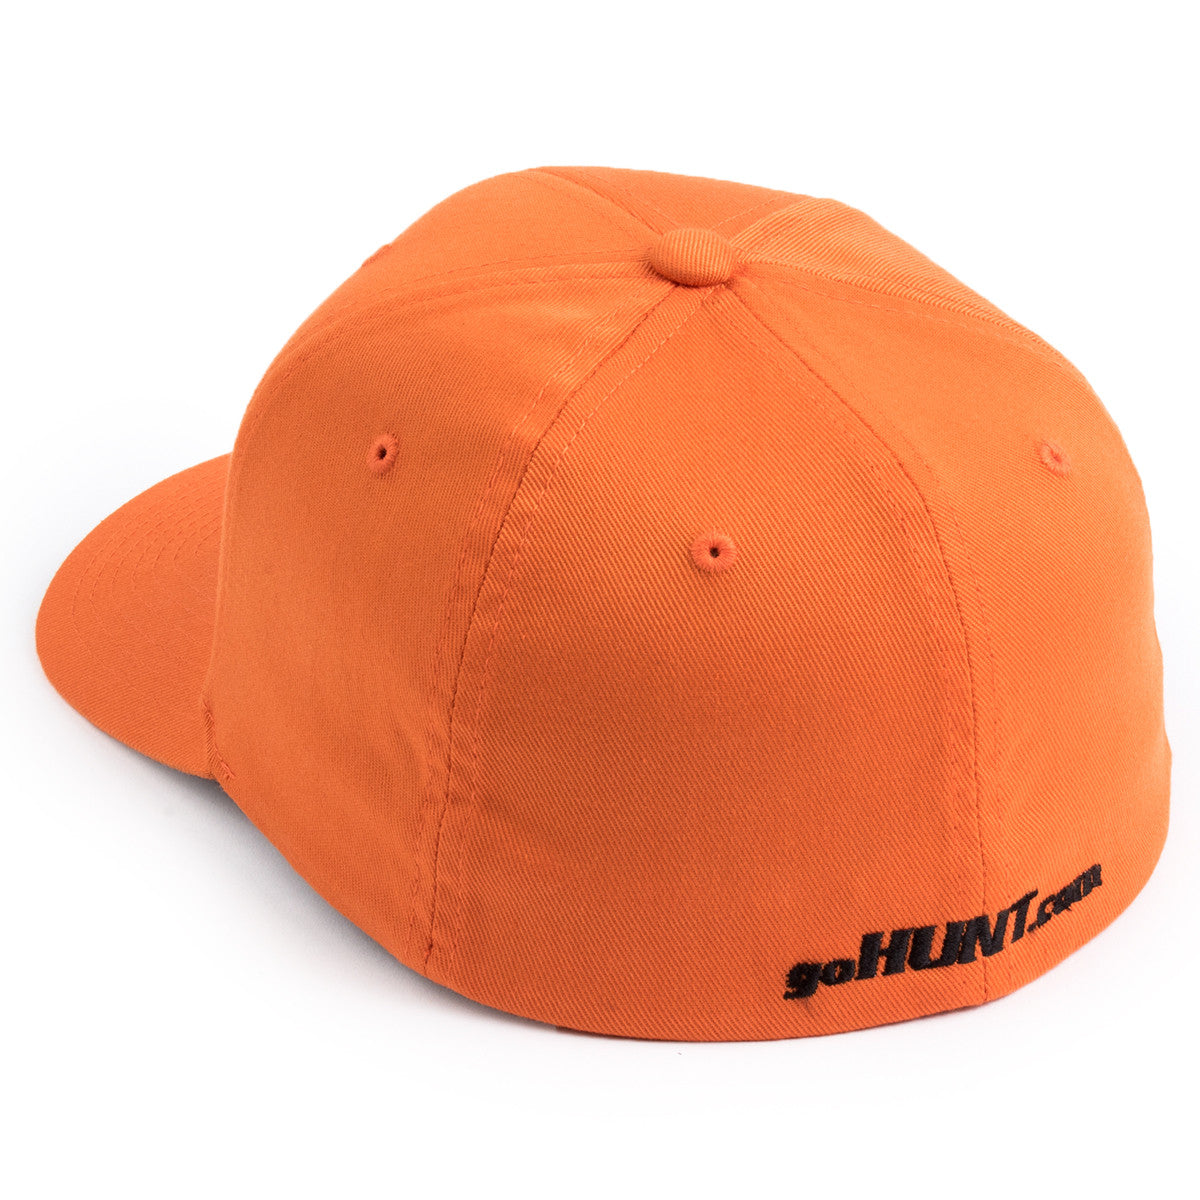 GOHUNT Orange Hat in goHUNT Orange Hat - goHUNT Shop by GOHUNT | GOHUNT - GOHUNT Shop